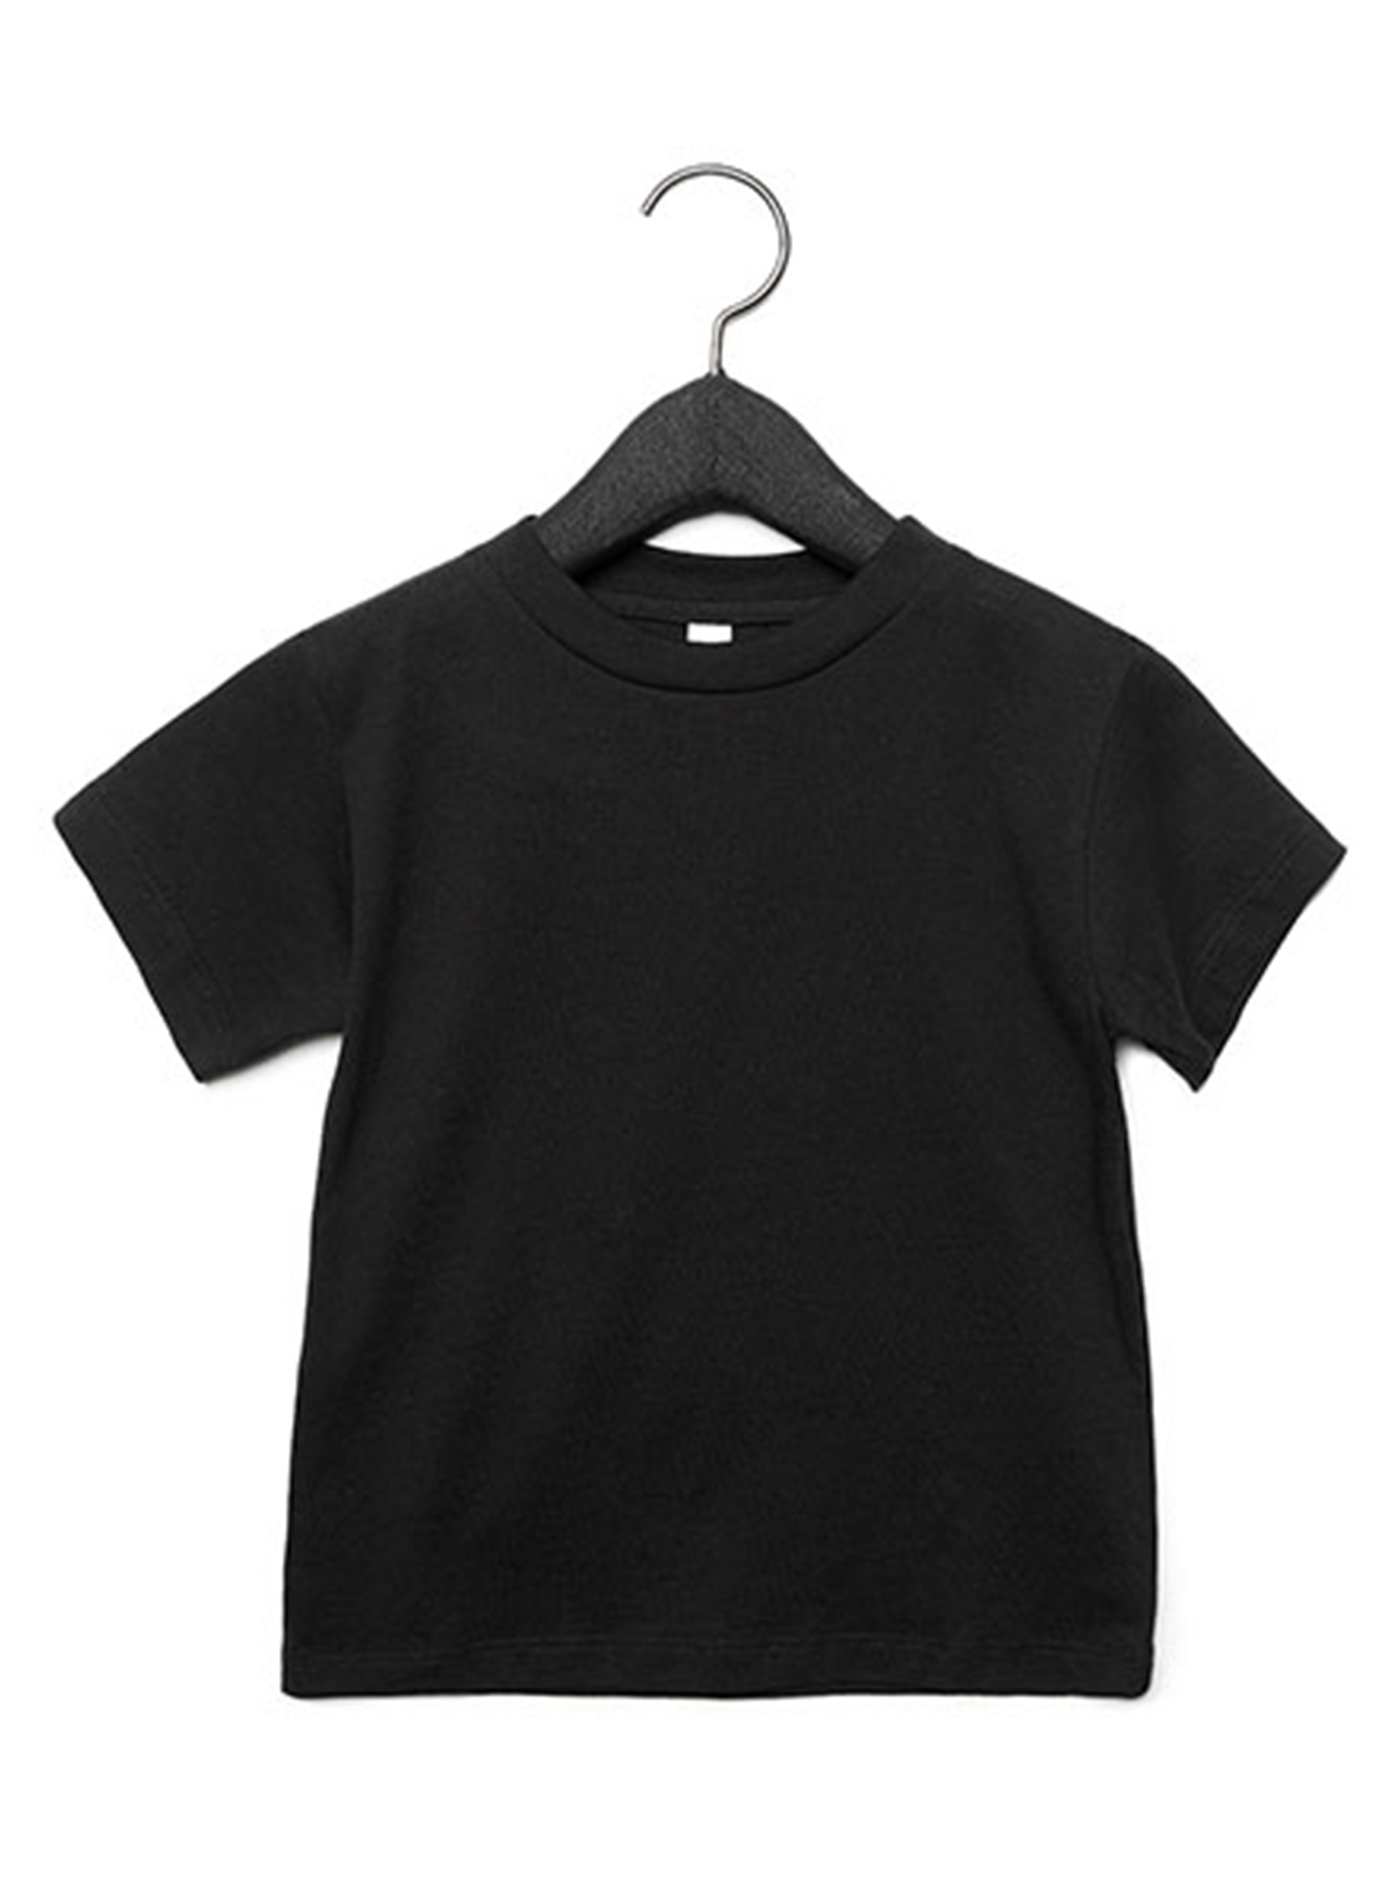 Dětské tričko Jersey - černá 2T (92)